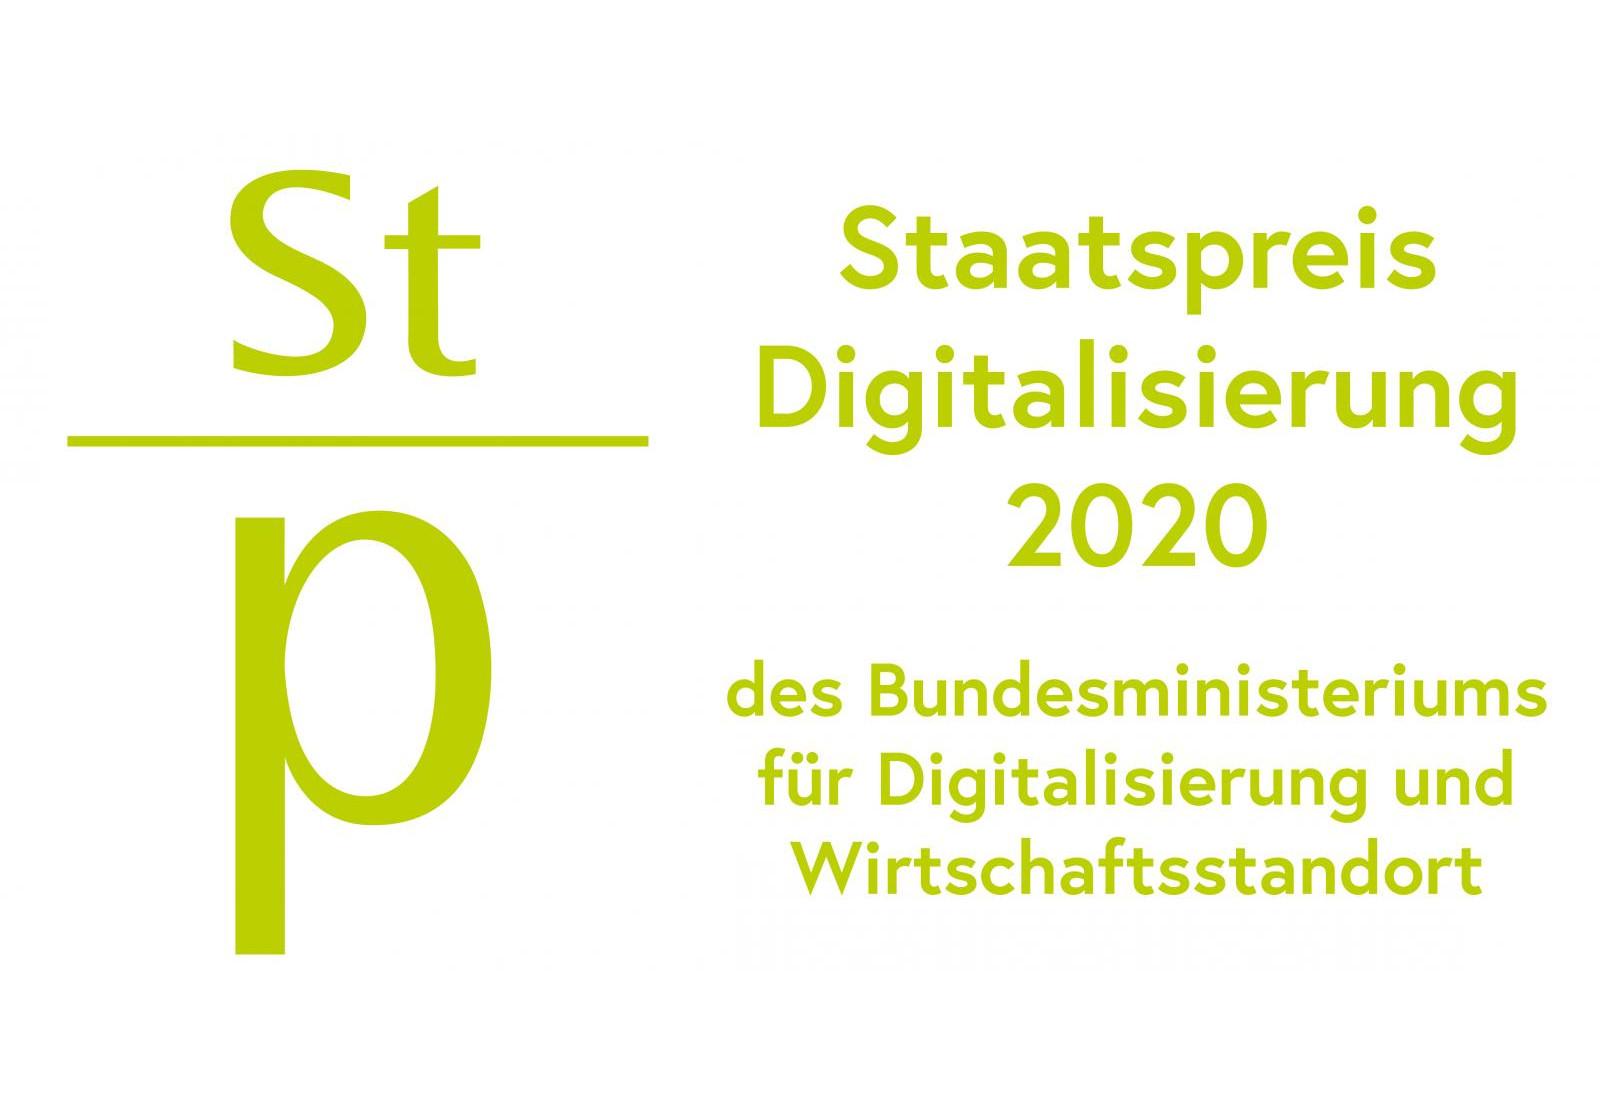 [company] in Graz - Staatspreis Digitalisierung 2020